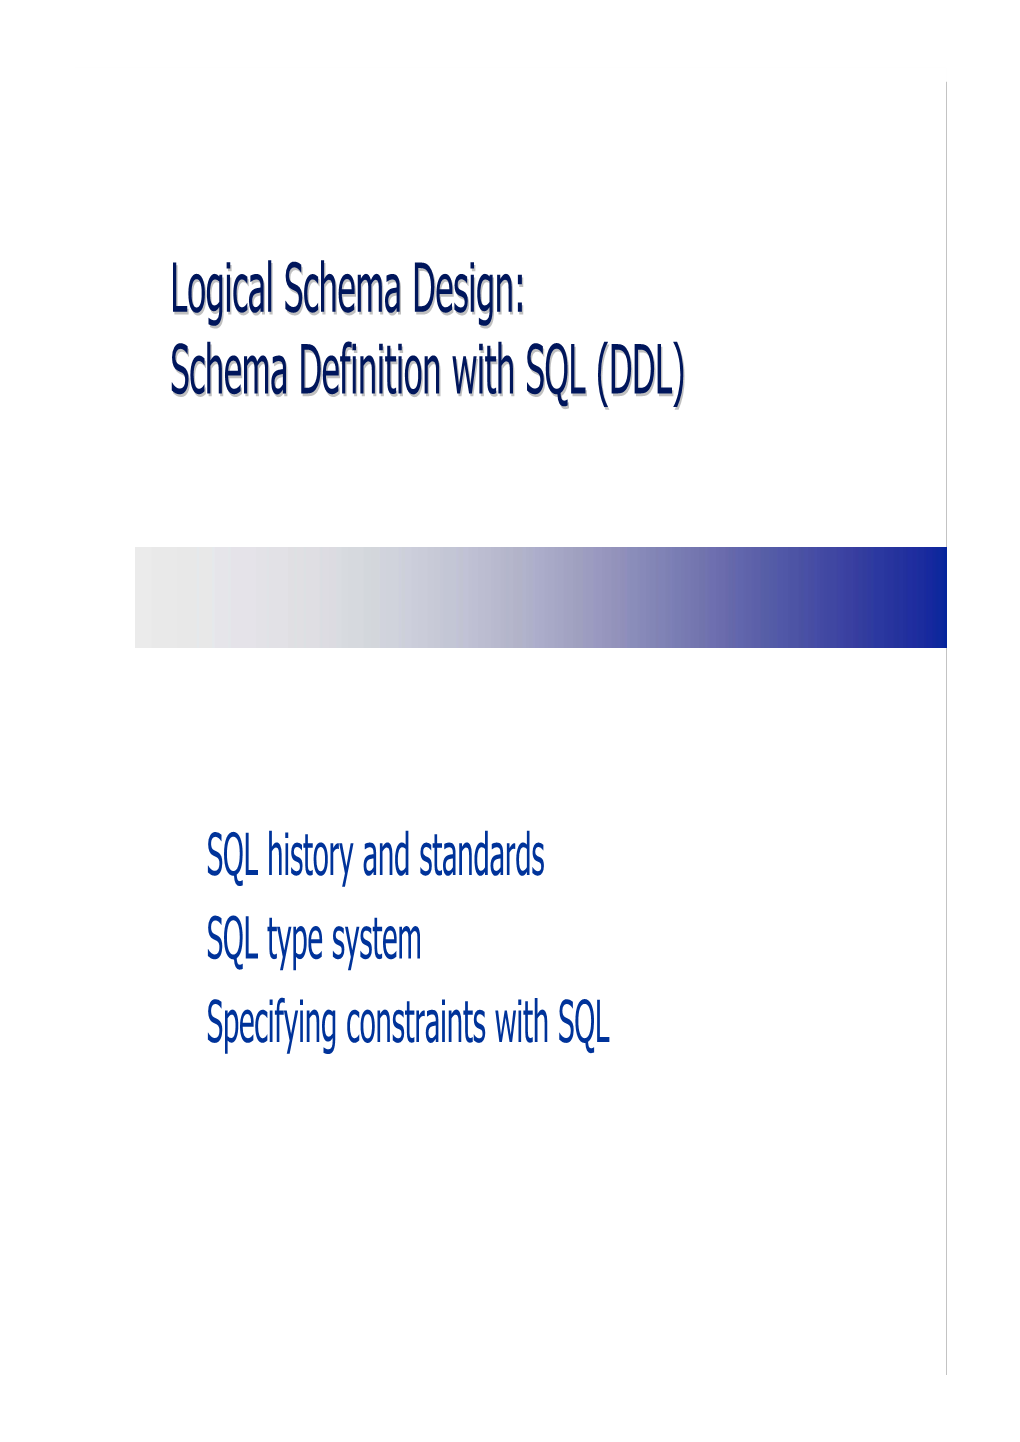 Logical Schema Design: Schema Definition with SQL (DDL)